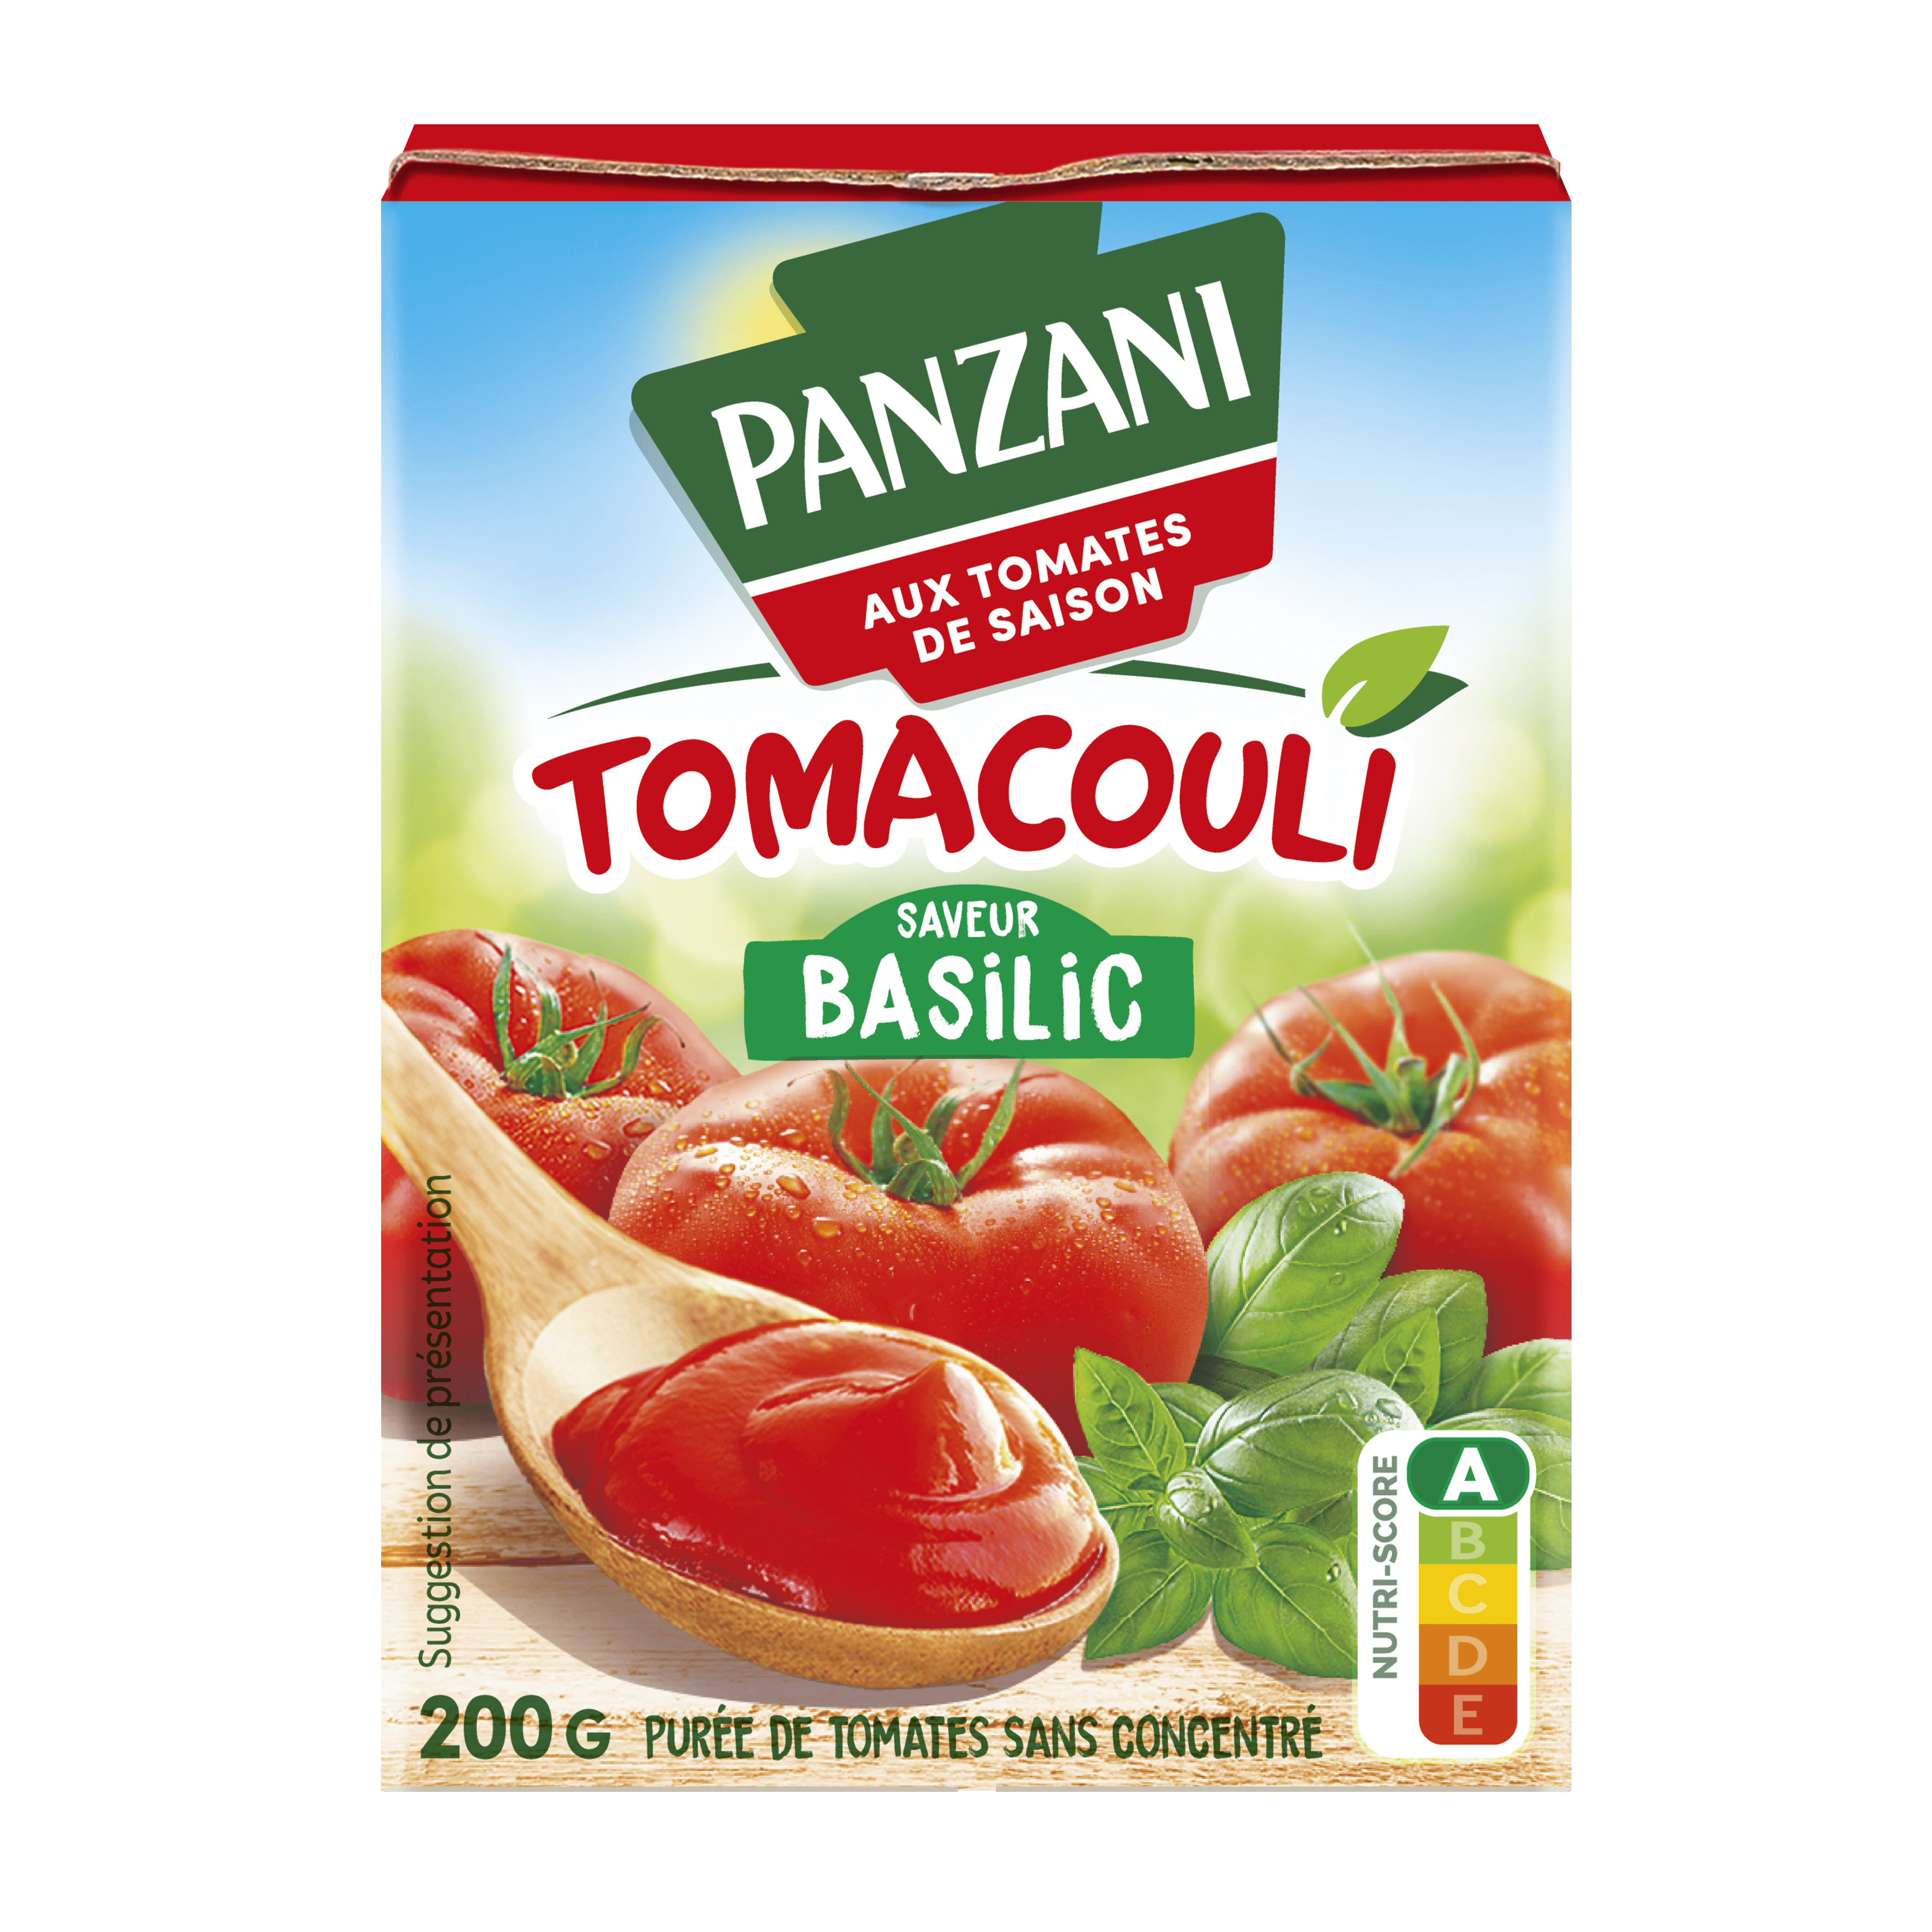 Le Tomacouli de Panzani : un ingrédient indispensable